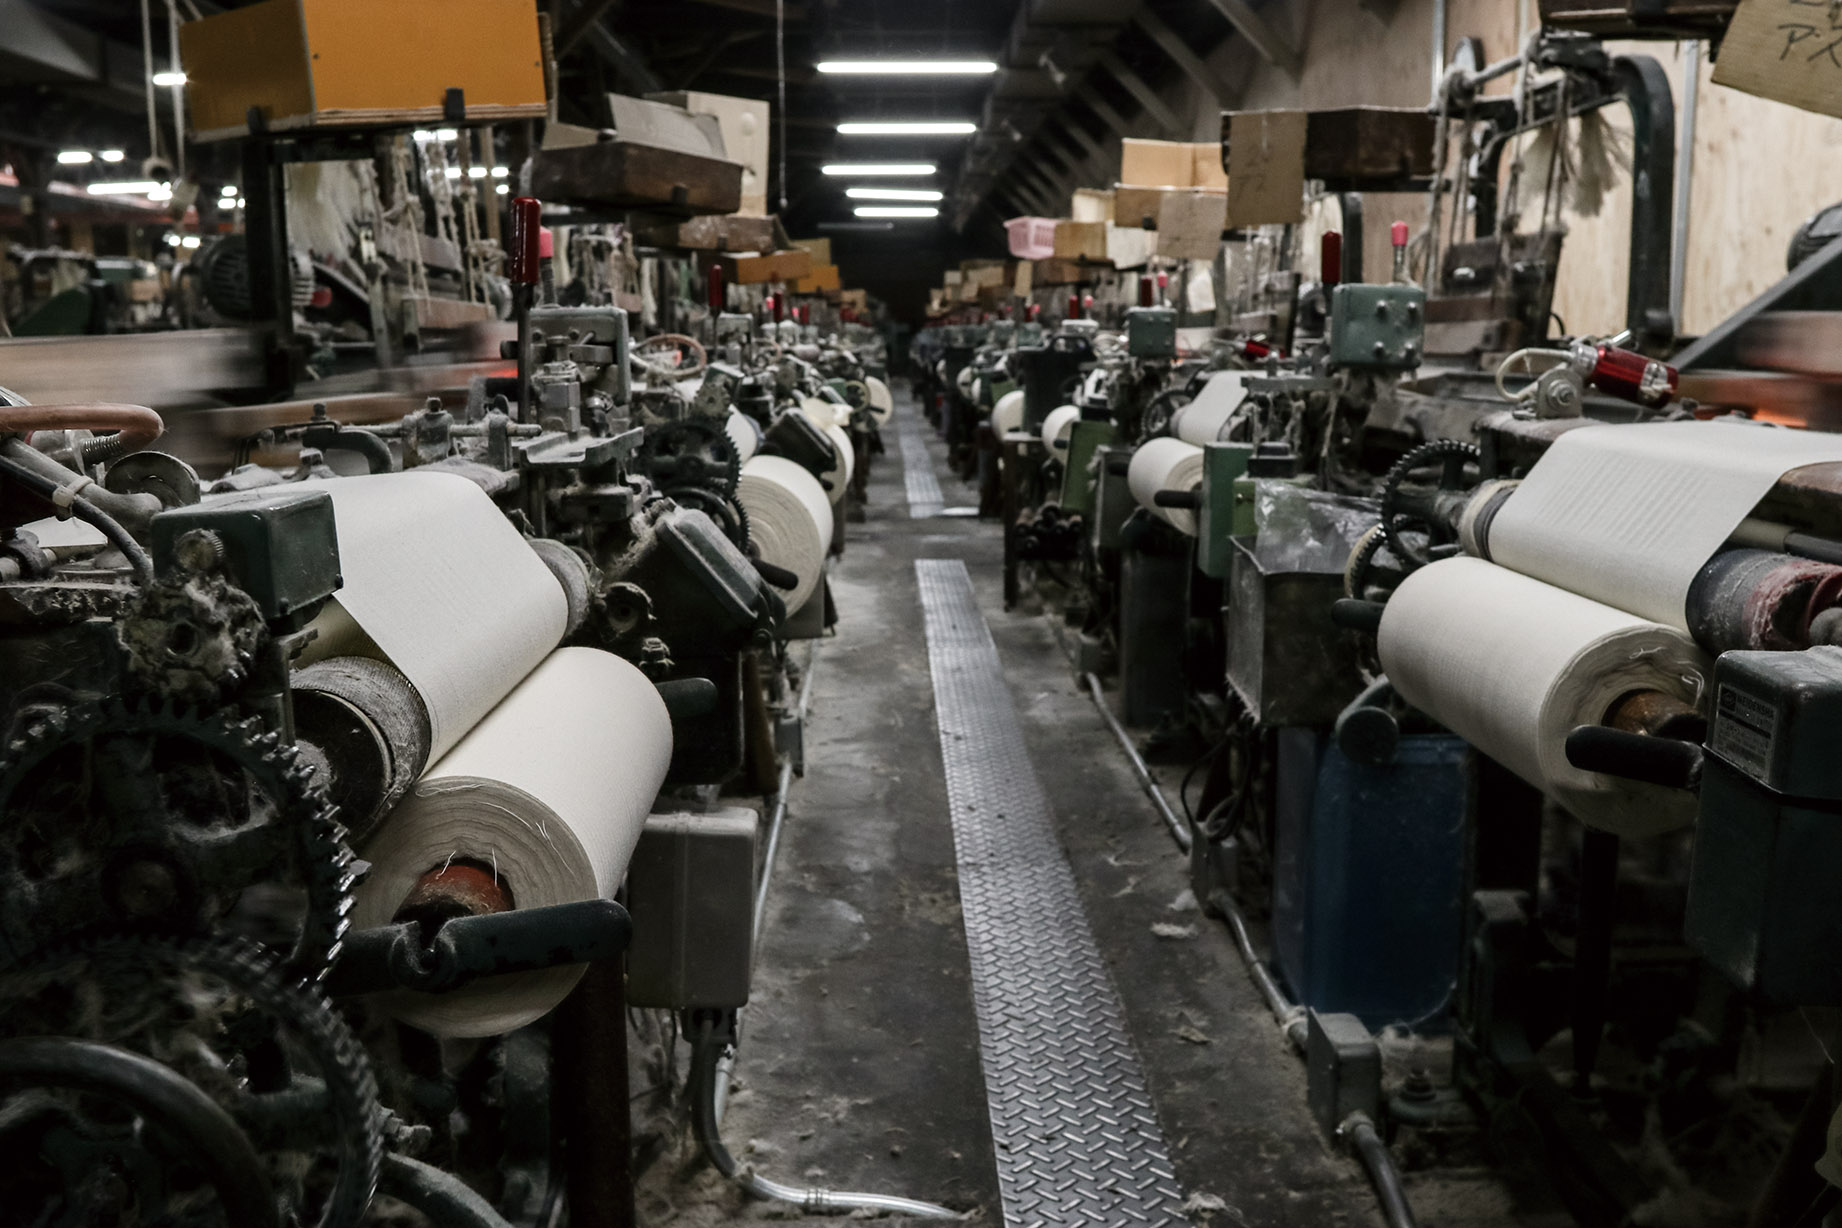 愛知県知多地域で織られている木綿を総称して知多木綿と呼びます。